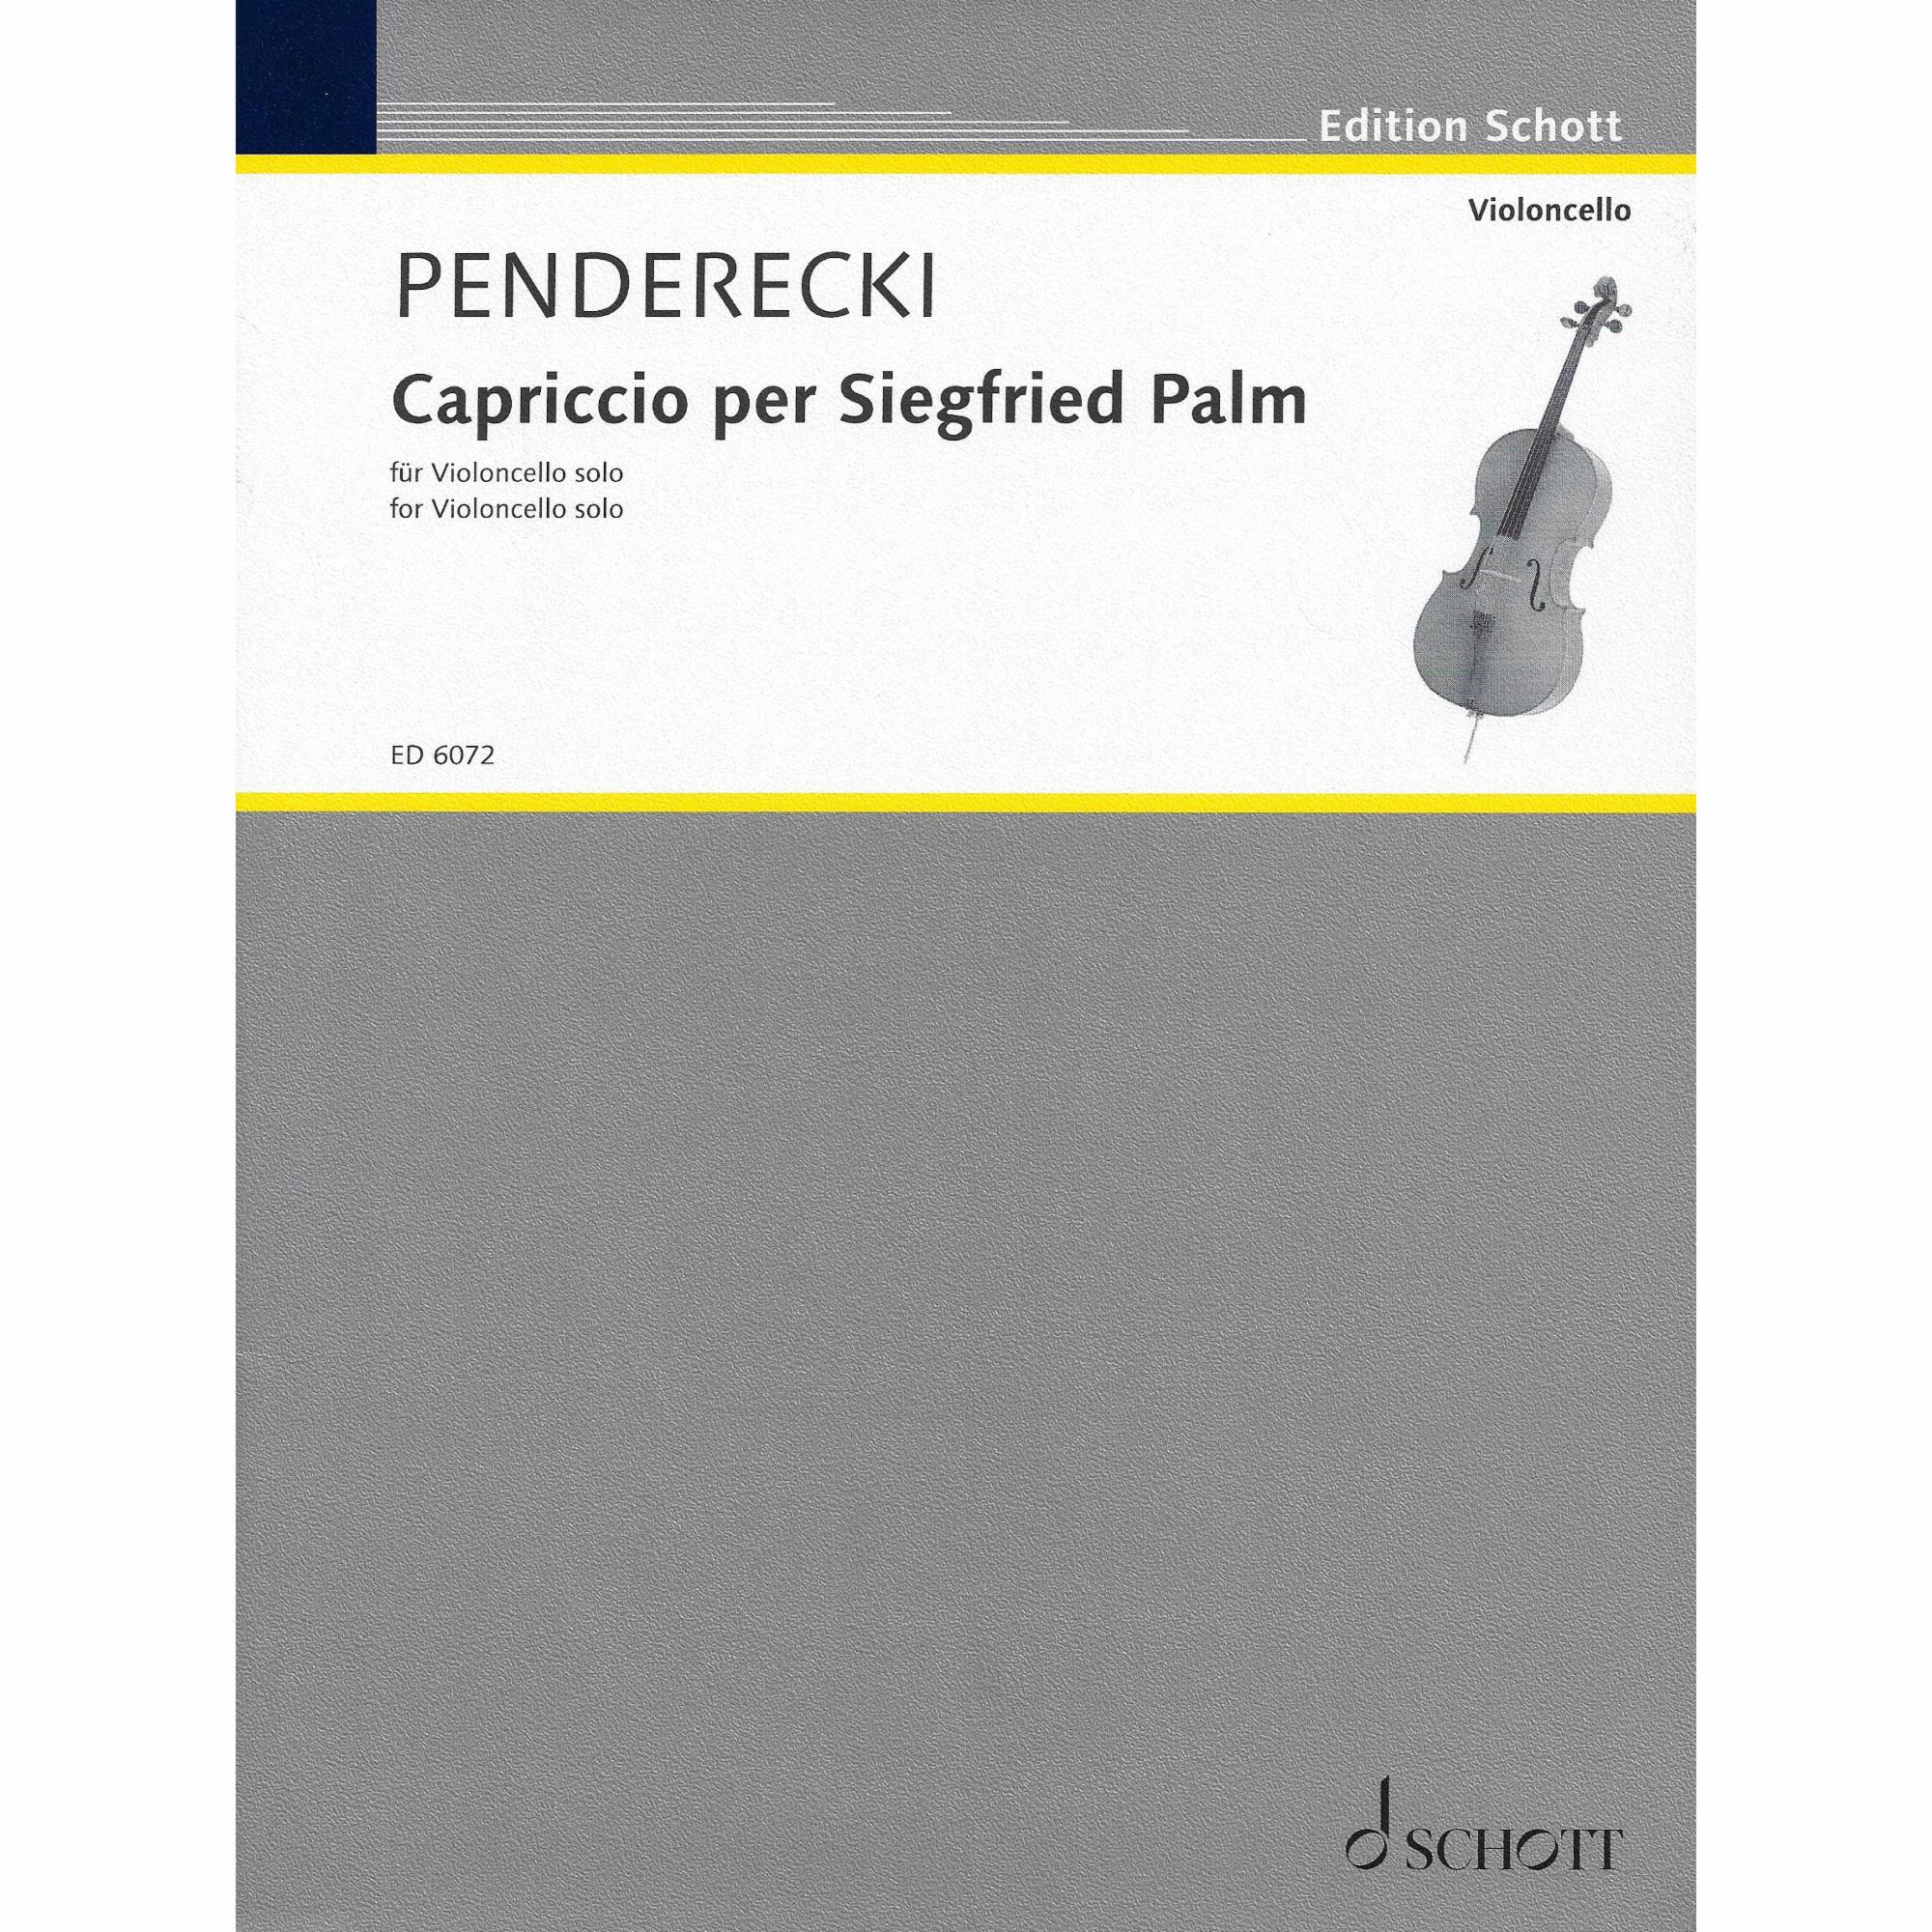 Penderecki -- Capriccio per Siegfried Palm for Solo Cello